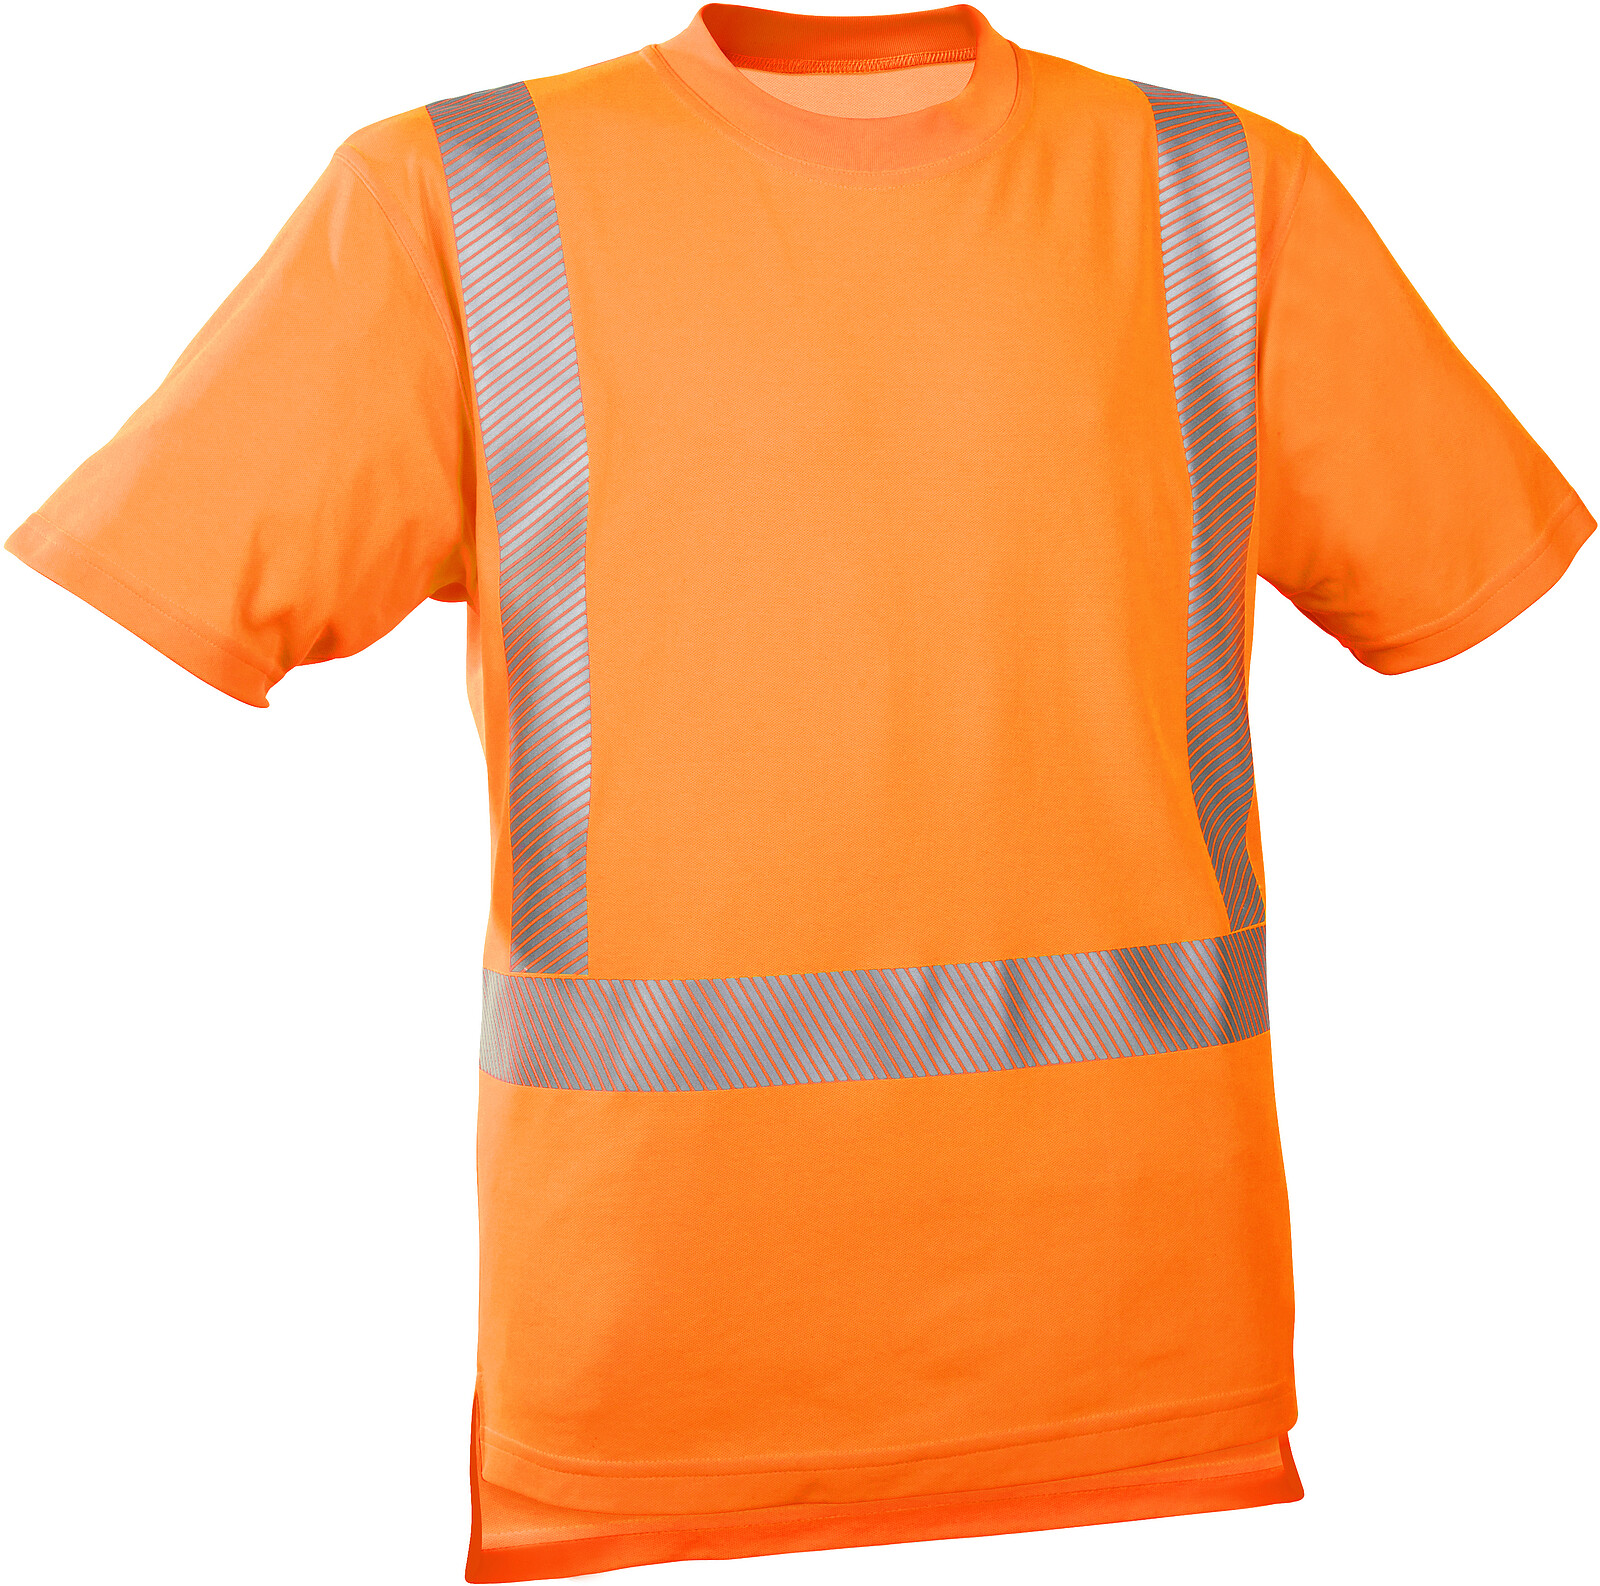 Warnschutz-T-Shirt 5-3040, warnorange, Gr. M 